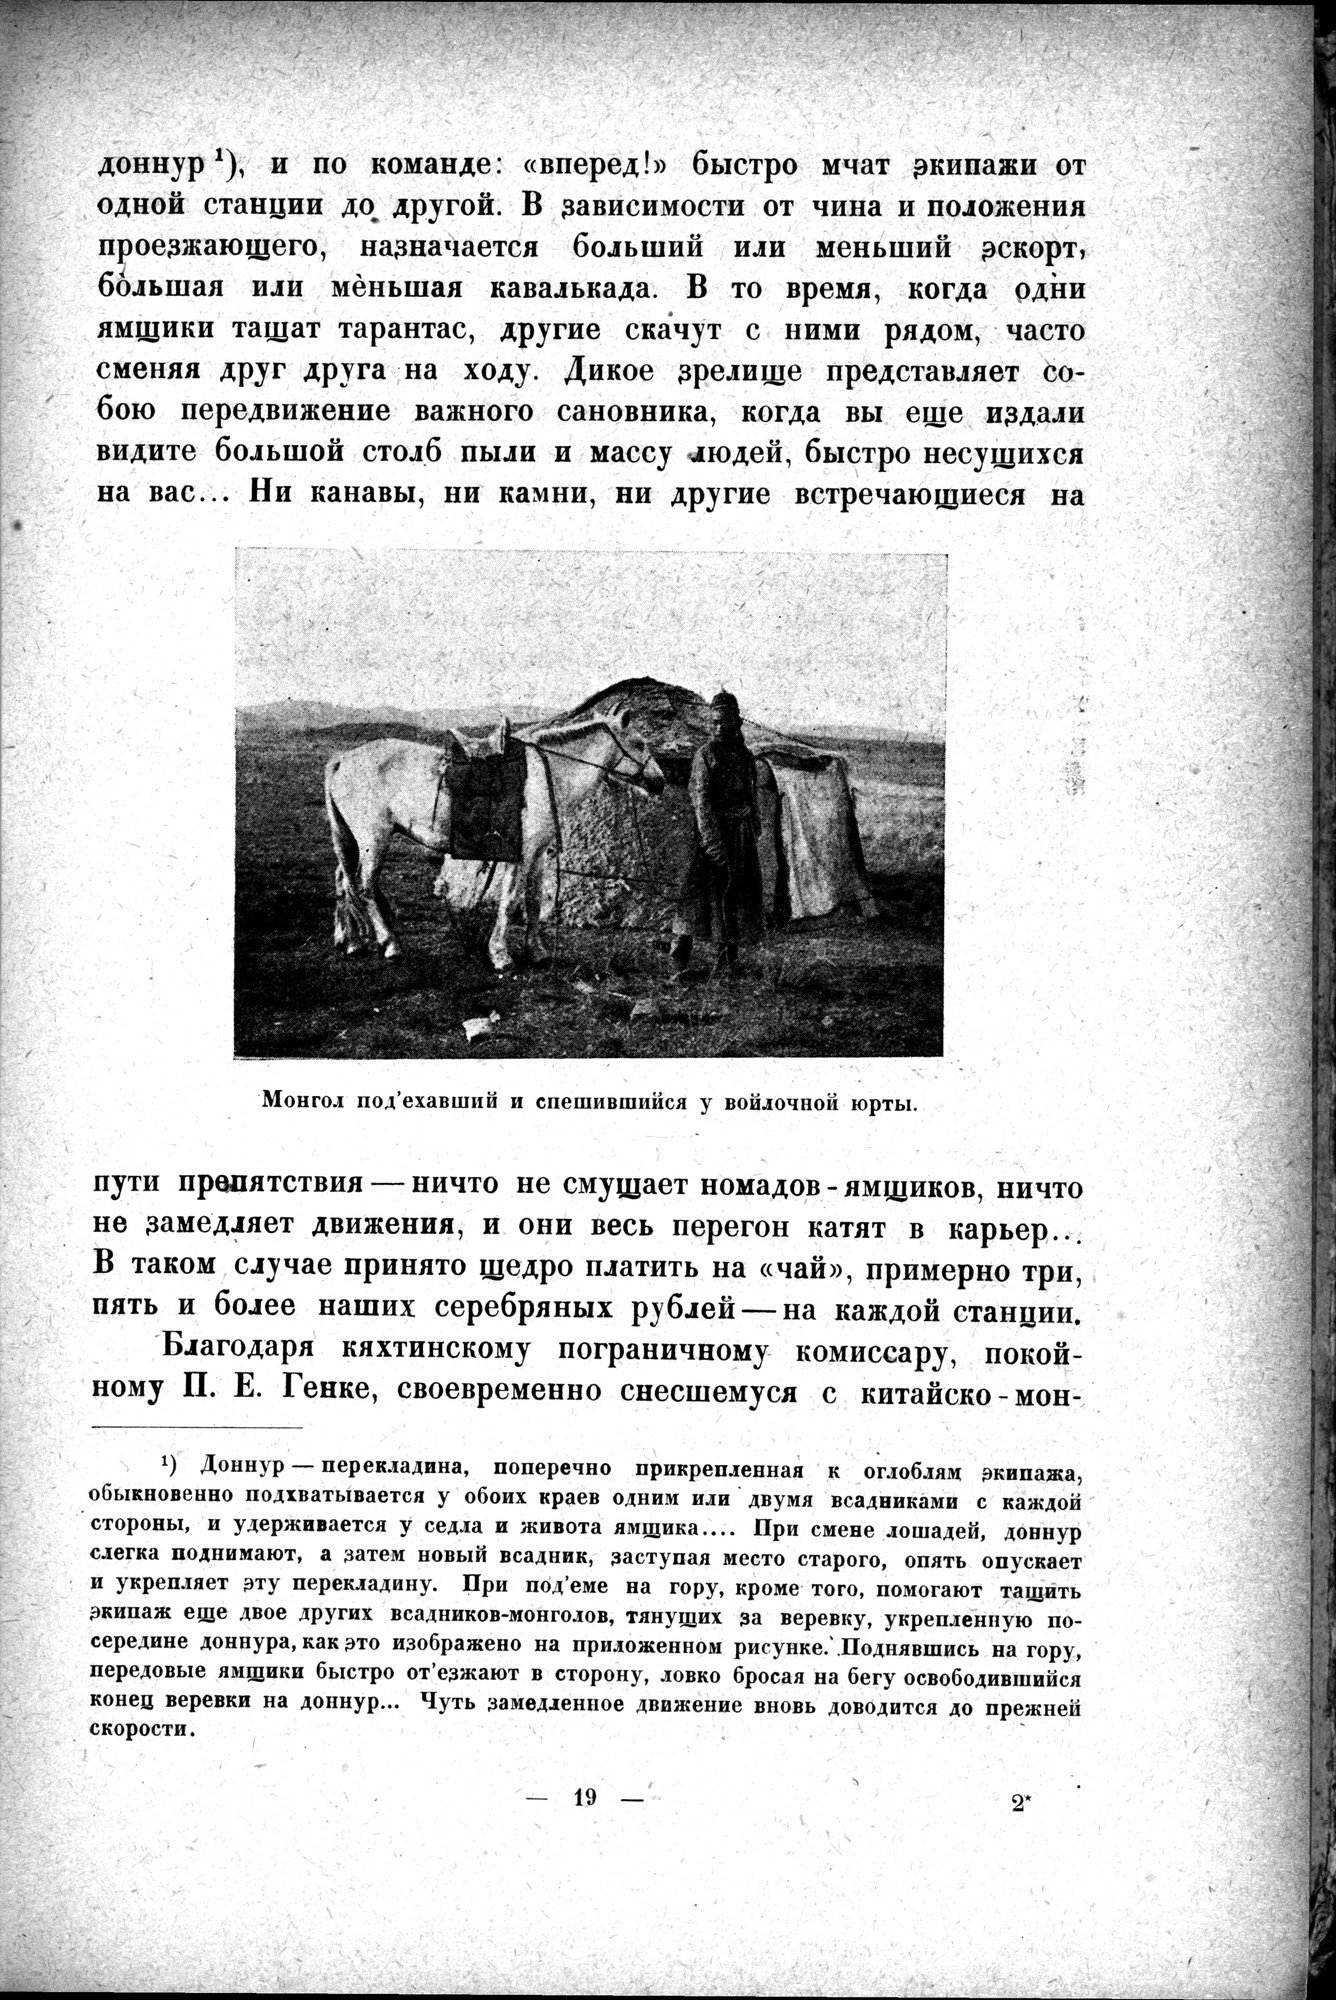 Mongoliya i Amdo i mertby gorod Khara-Khoto : vol.1 / 35 ページ（白黒高解像度画像）